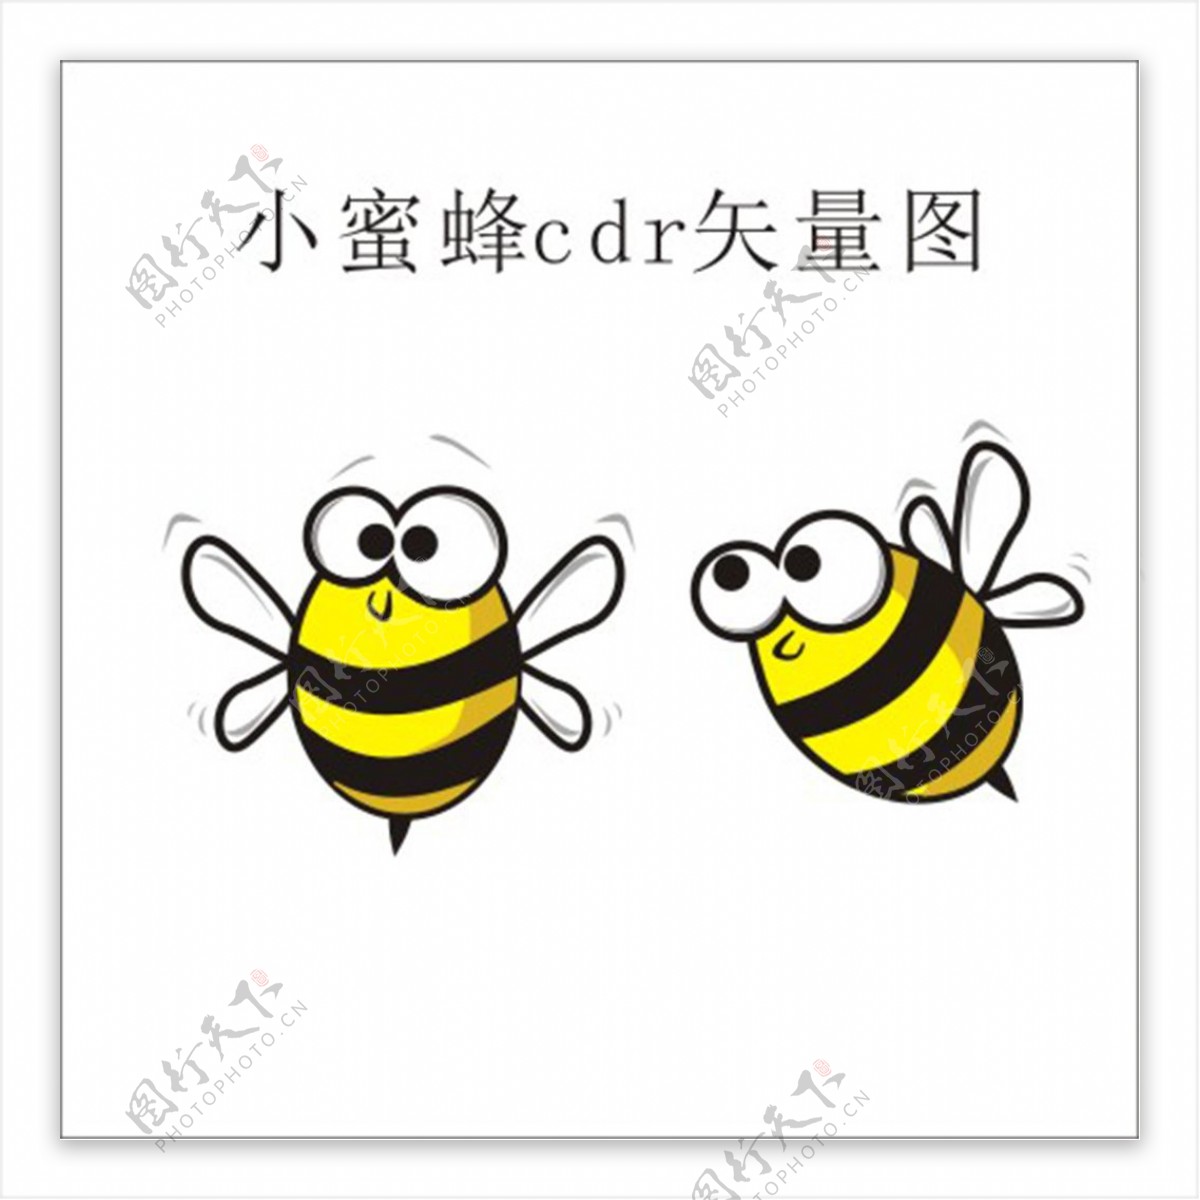 卡通蜜蜂插画蜜蜂矢量文件